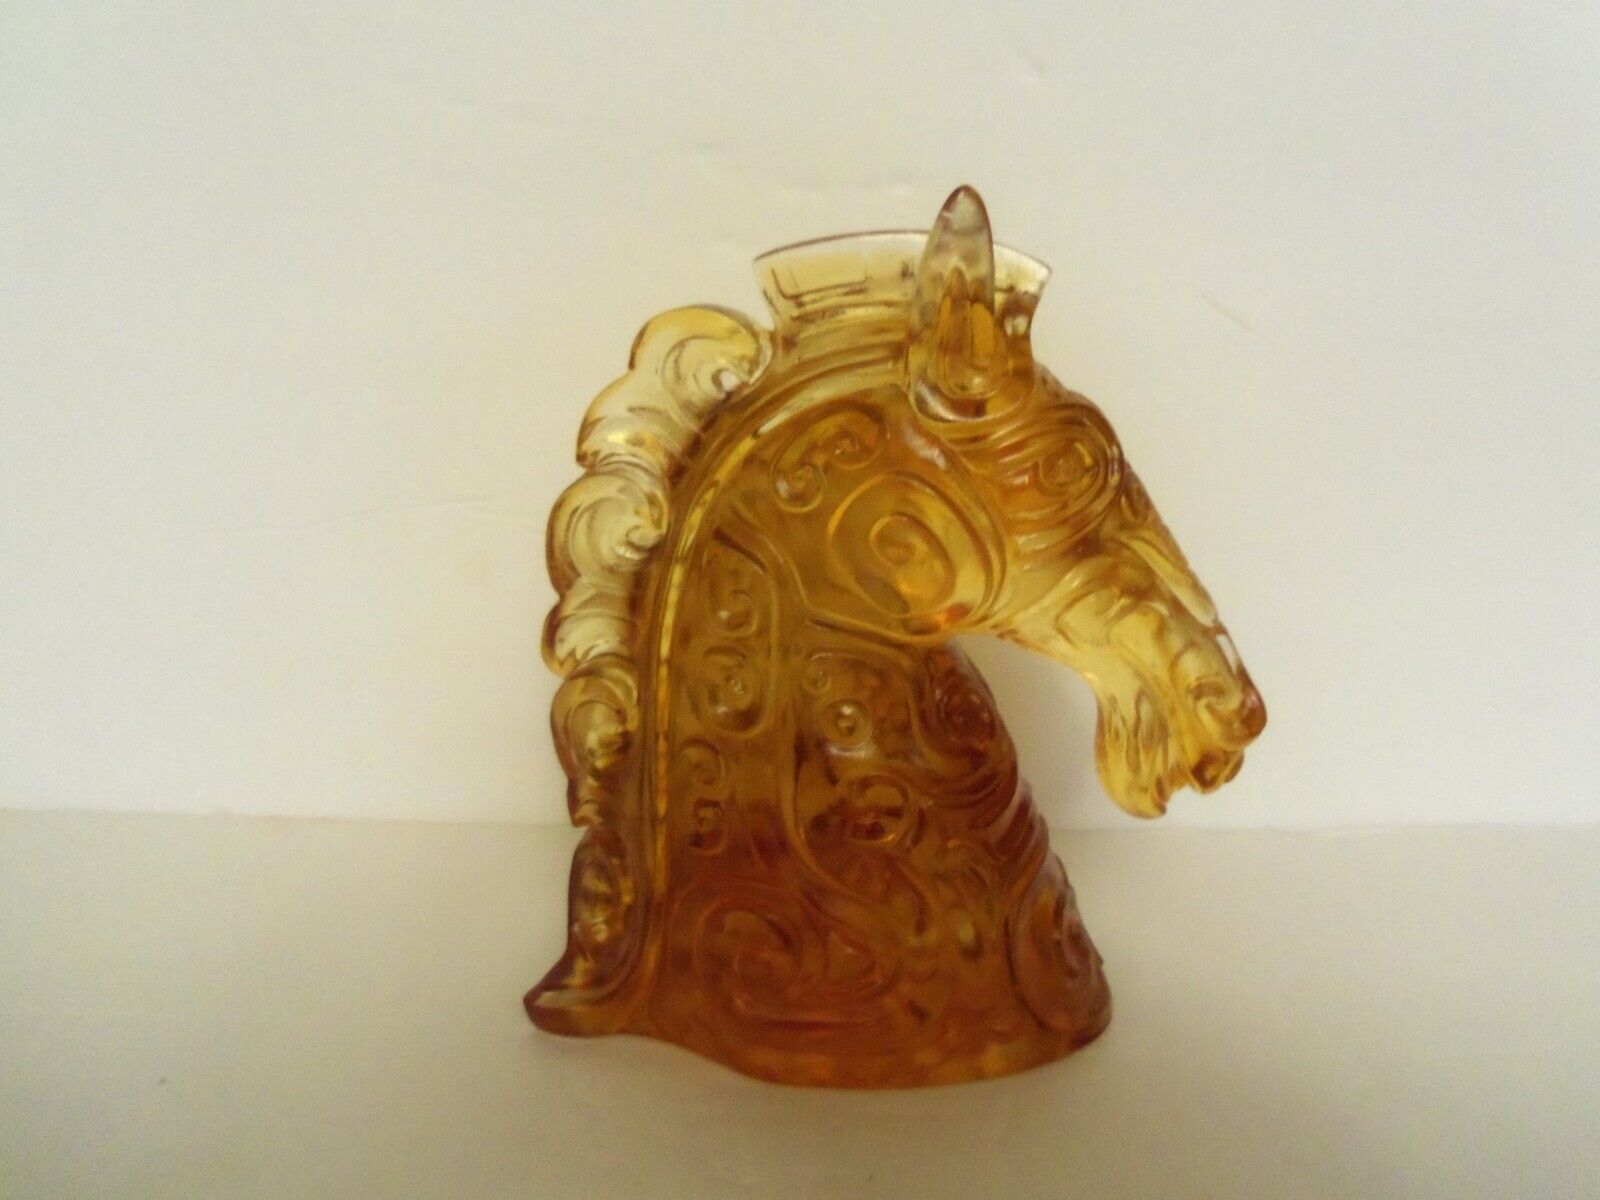 Amber Glass Ornate Horse Head Decorative Figurine Bookend 43/4